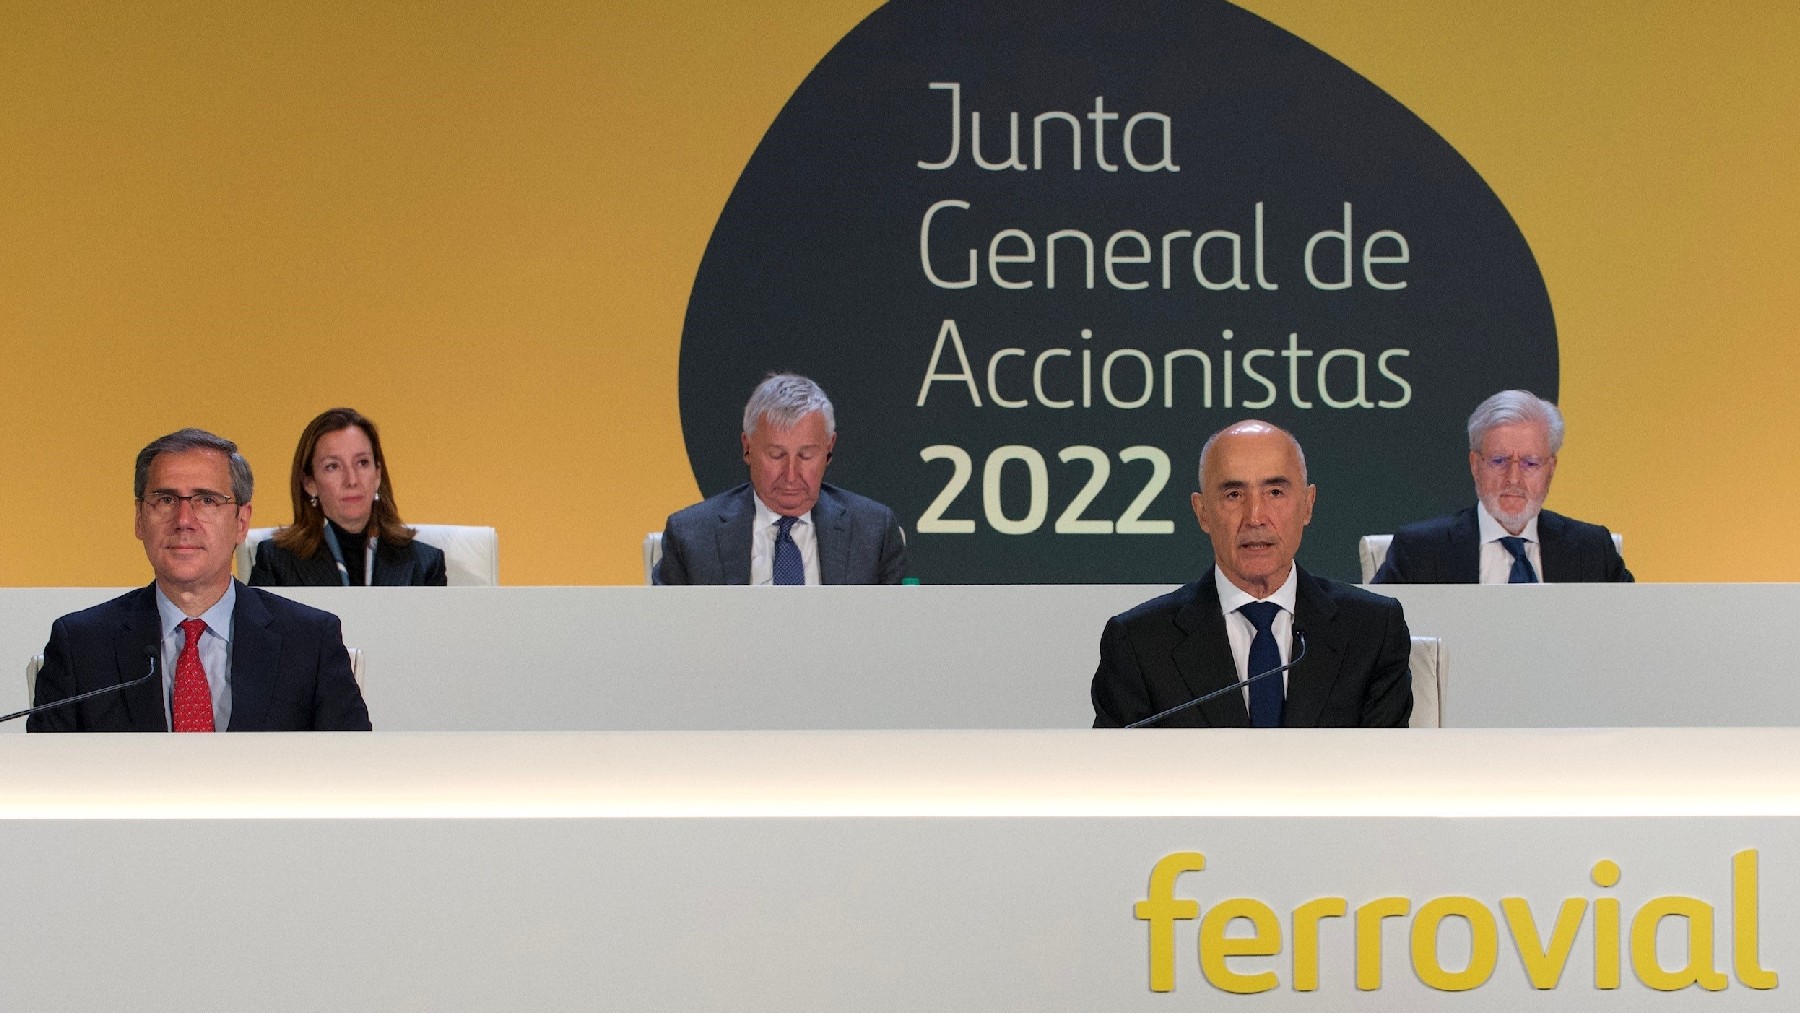 Junta de Accionistas de Ferrovial de 2022